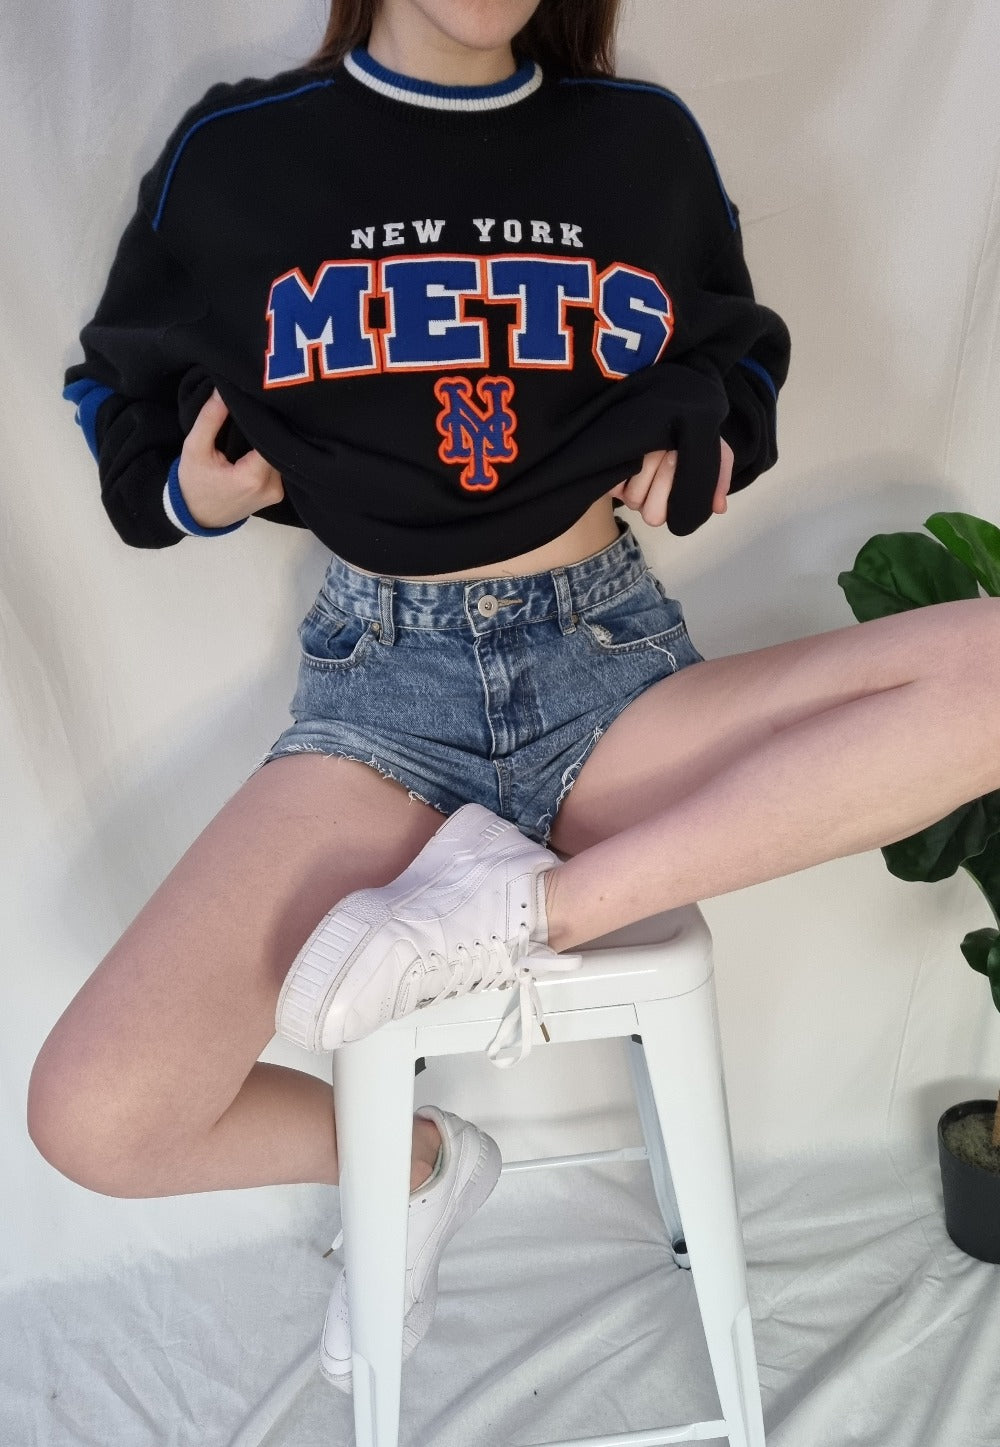 Vintage New York Mets sweatshirt - Claire de Lunar